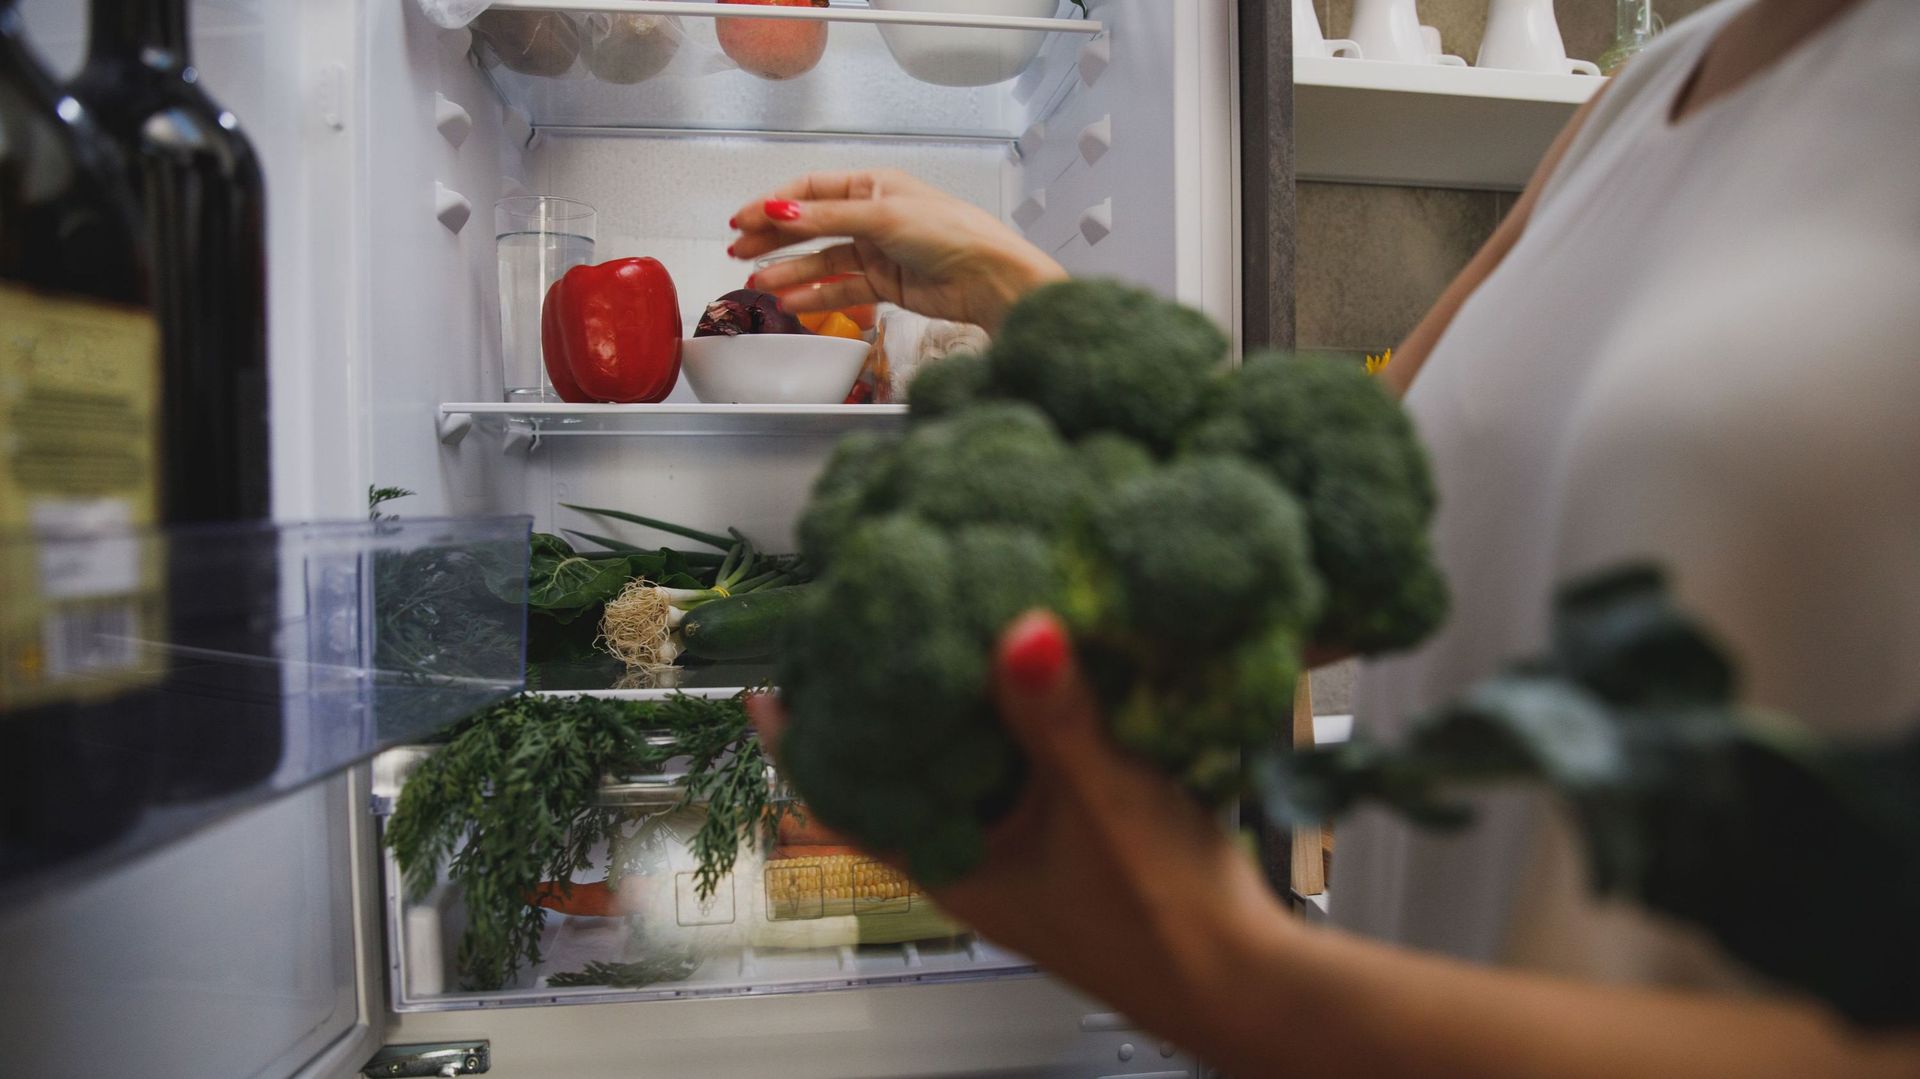 Comment ranger son frigo pour conserver au mieux les aliments ?